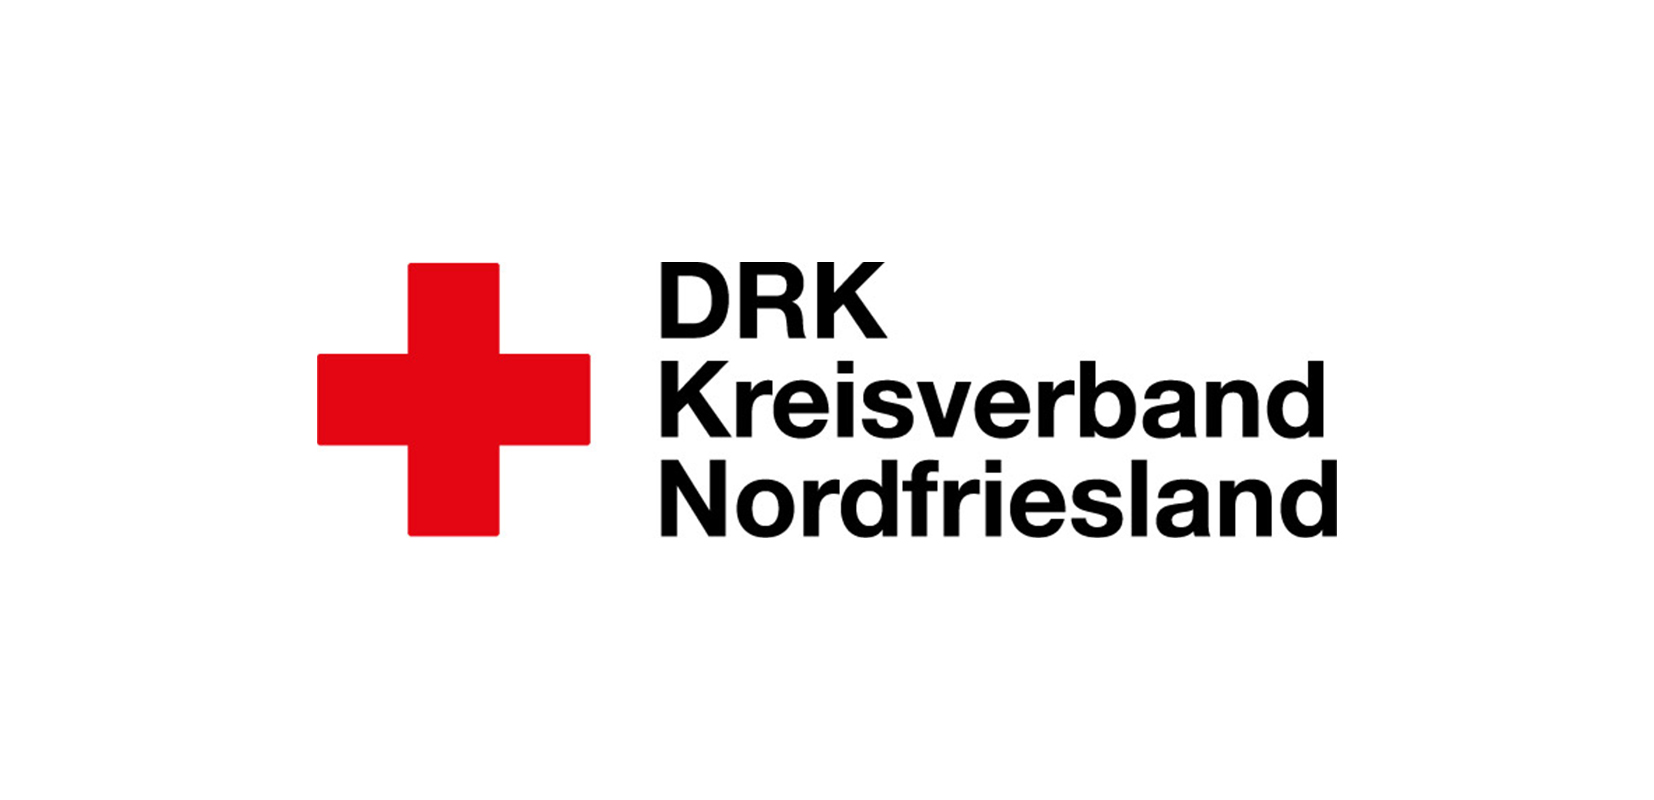 DRK Kreisverband Nordfriesland